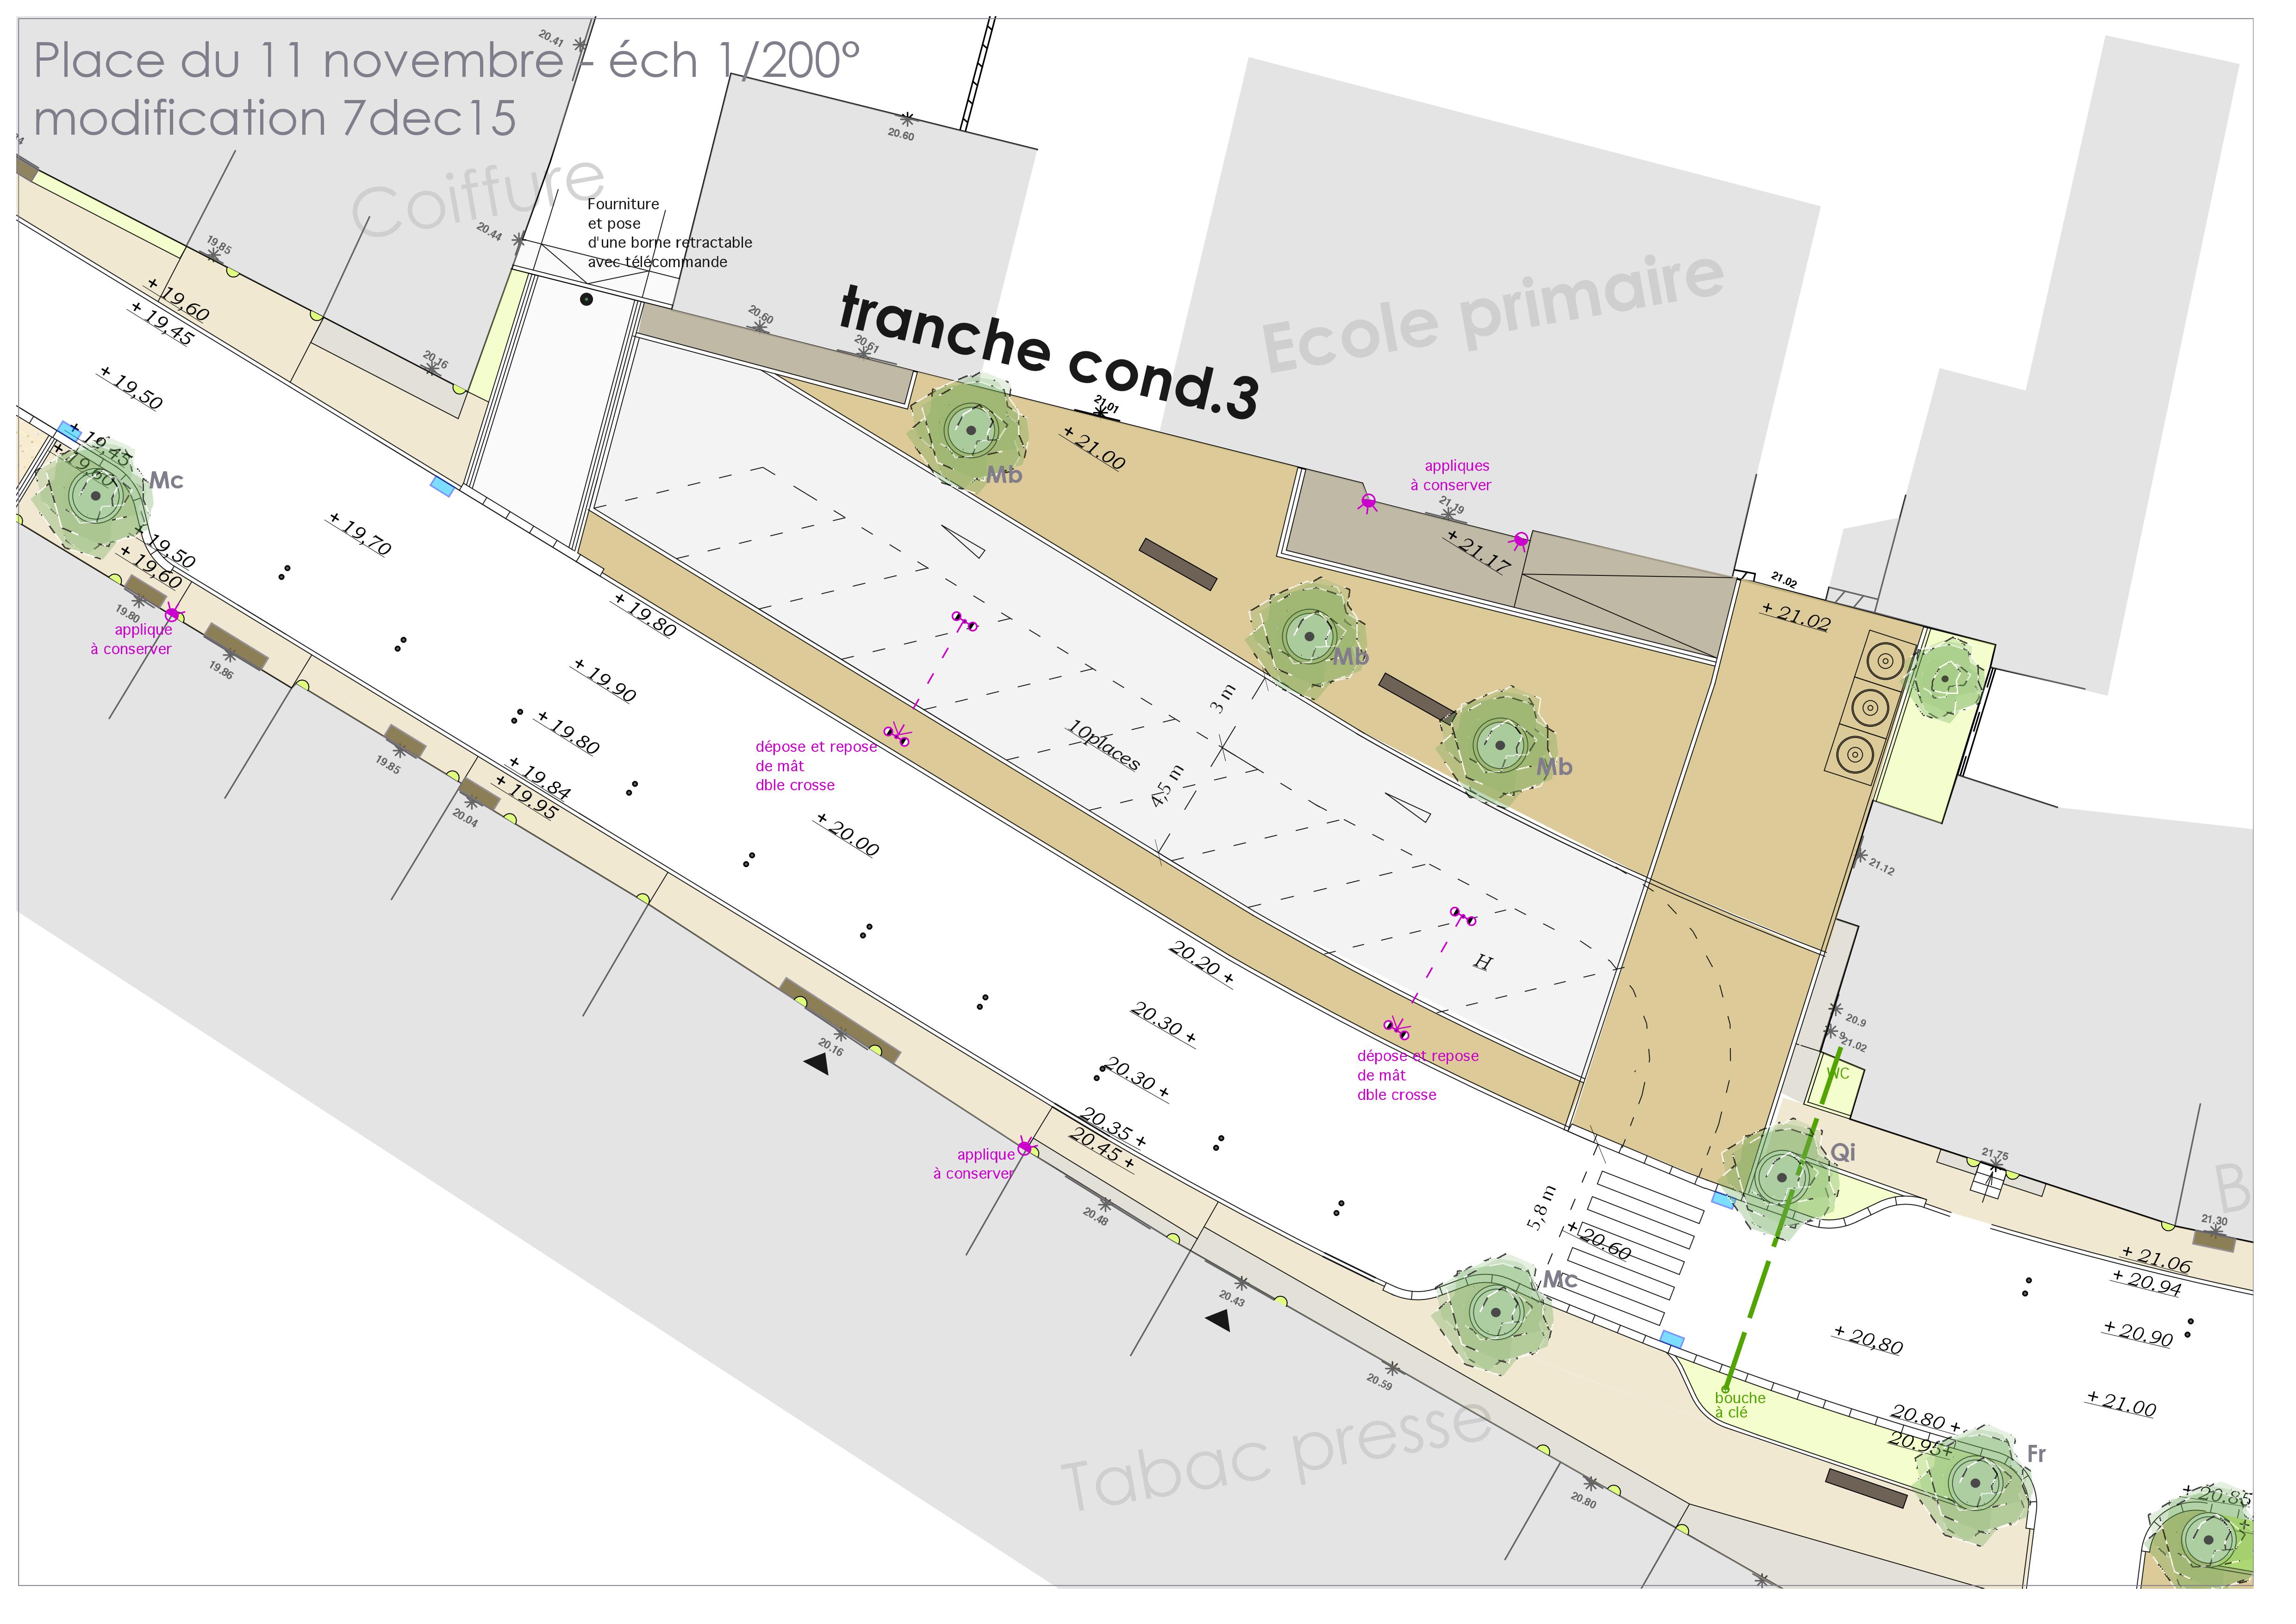 Plan d'aménagement de la Place du 11 Novembre